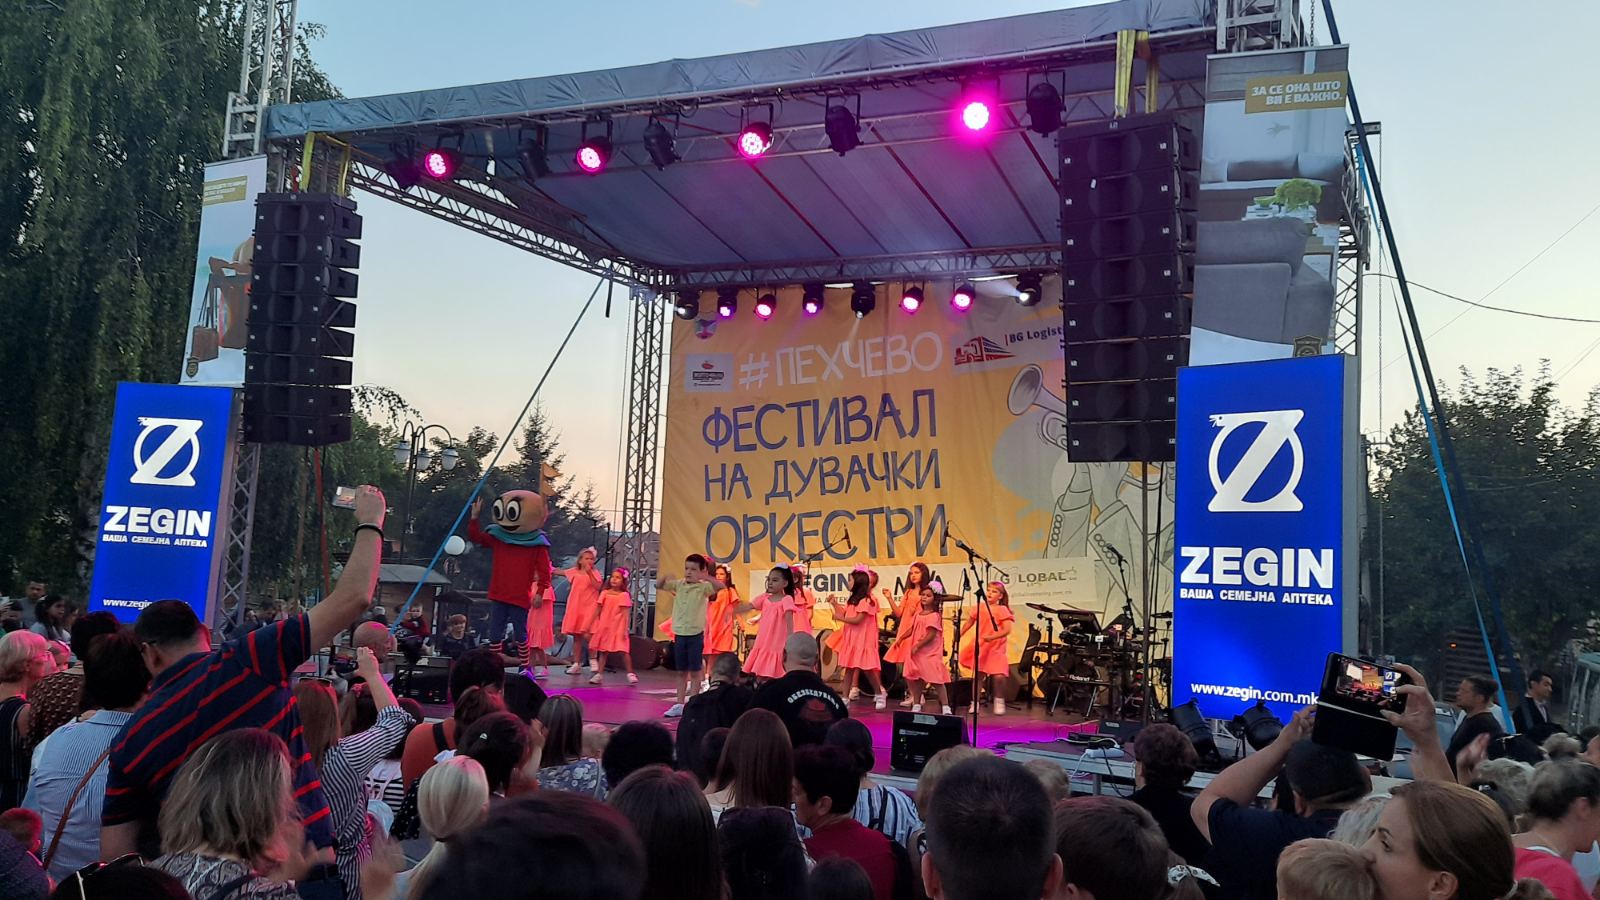 zegin del od festival na duvacki orkestri Pehcevo 2022